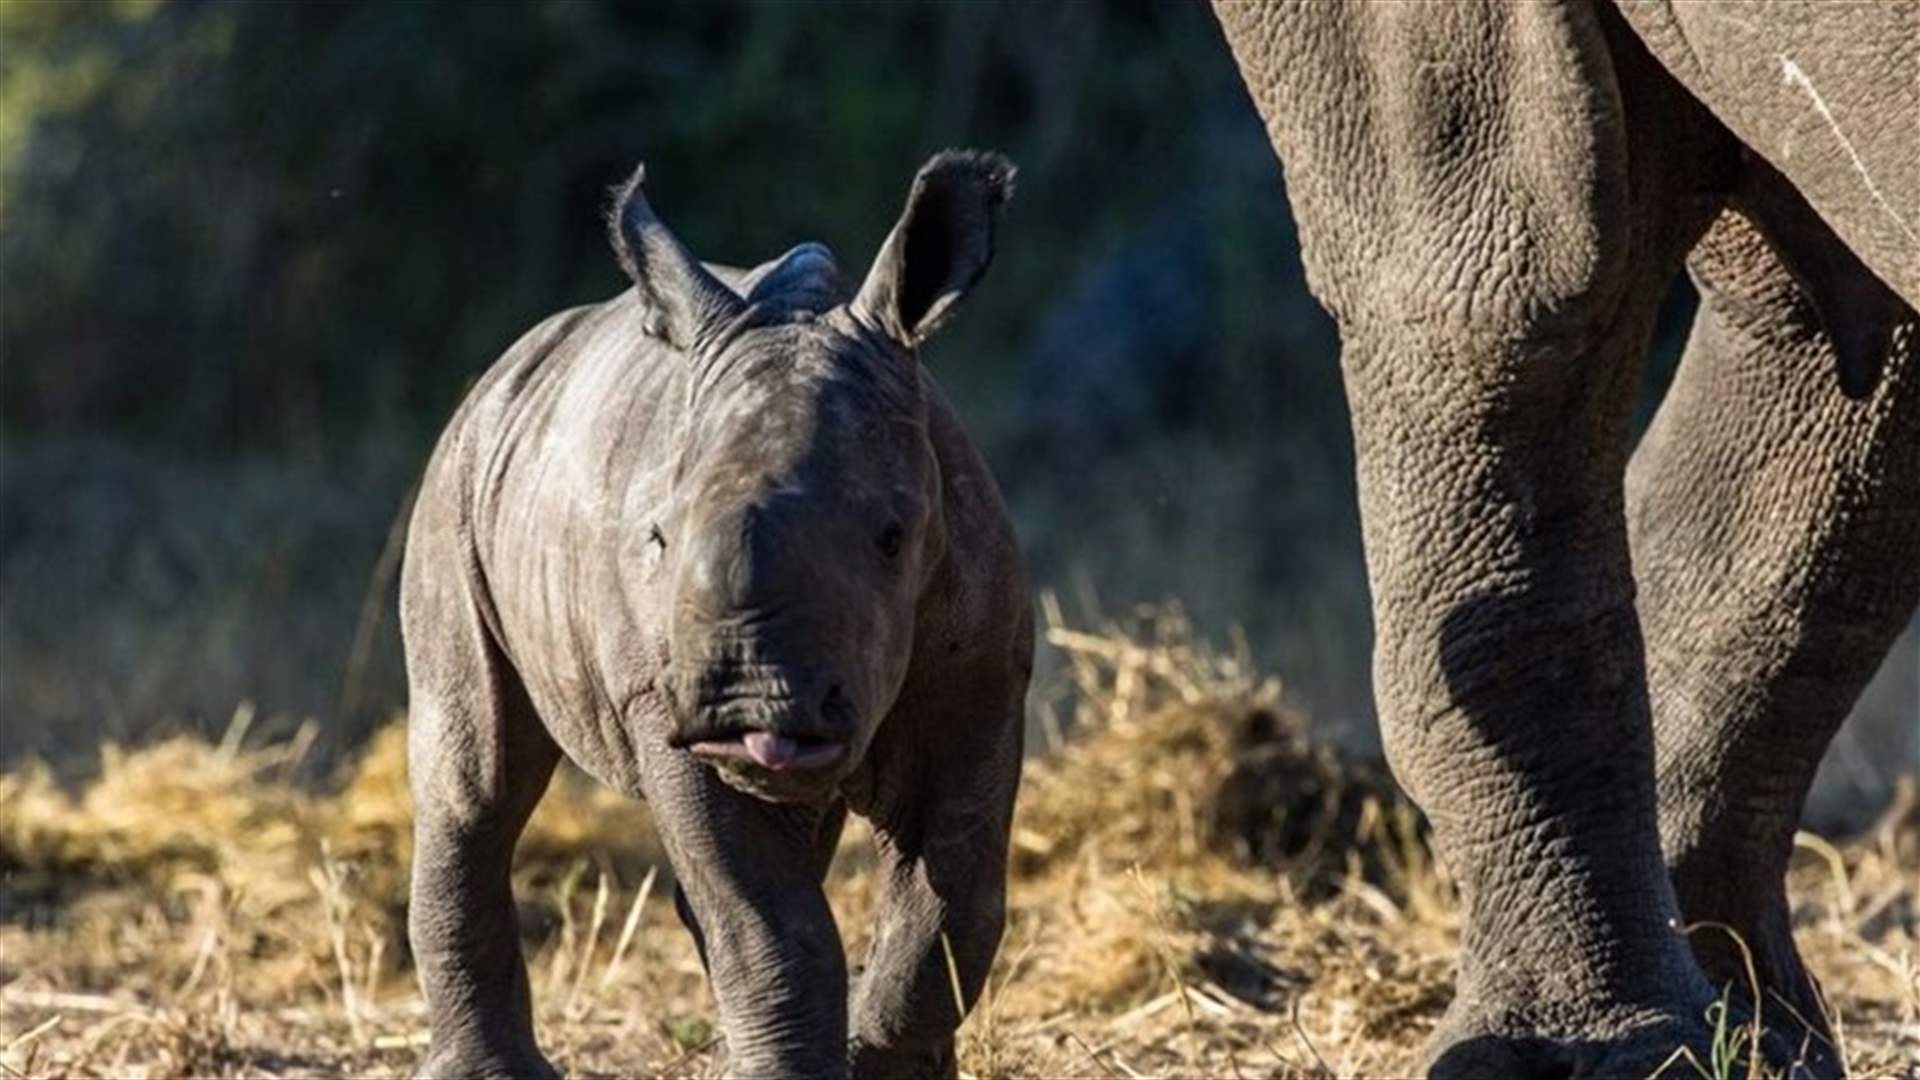 بعد 40 عاماً من انقراضه محليا... وحيد القرن يعود إلى موزامبيق